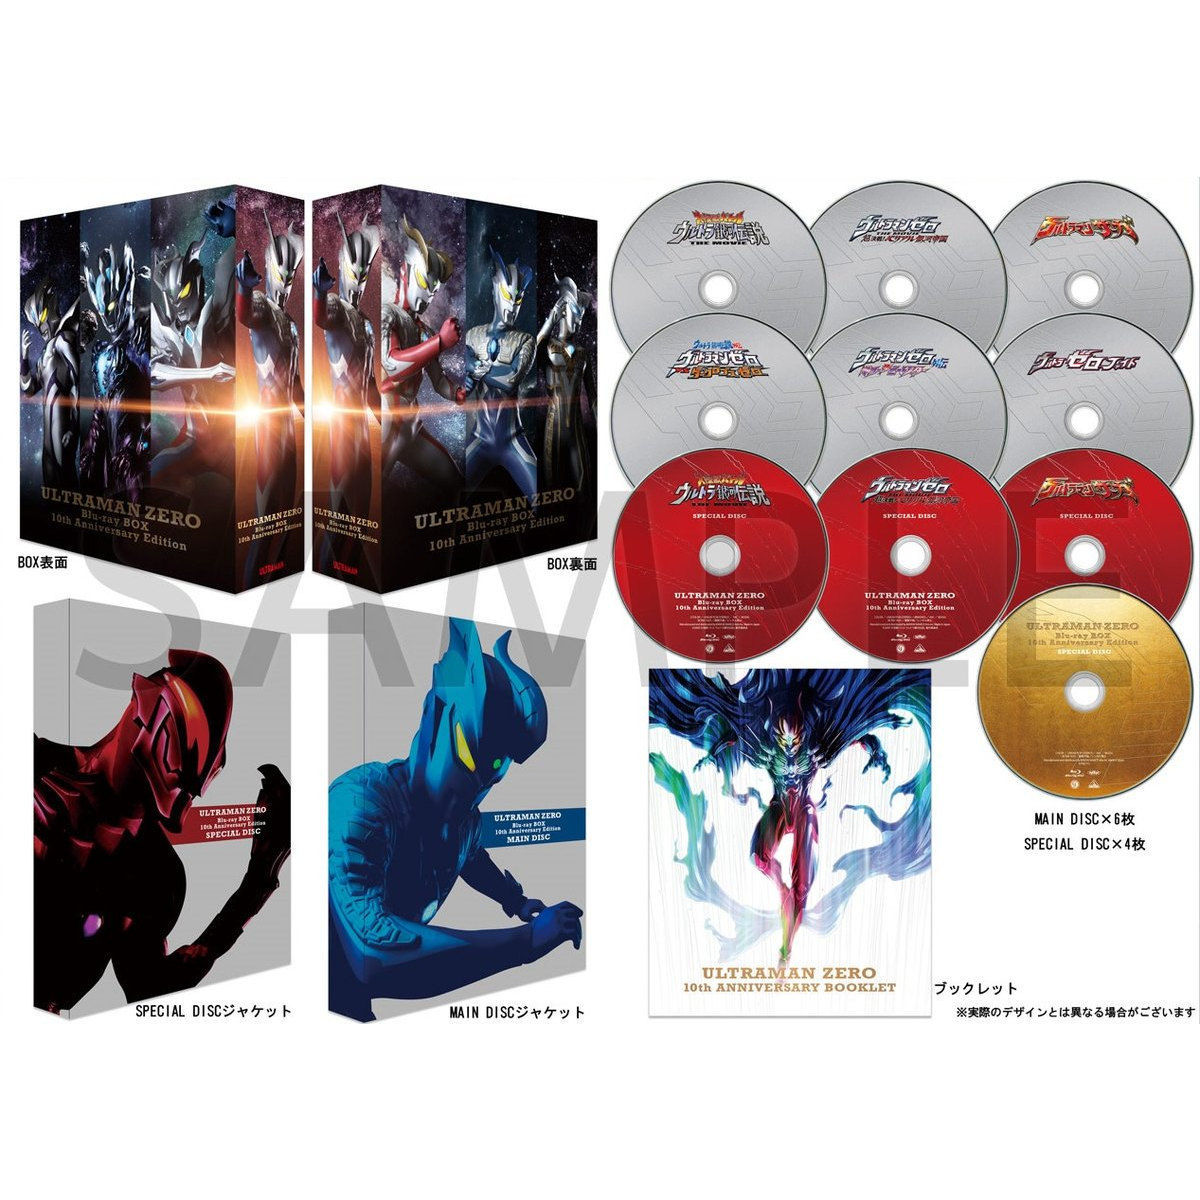 ウルトラマンゼロ Blu-ray BOX 10th Anniversary  Edition【A-on、プレミアムバンダイ、Amazon、TSUBURAYA MEMBERSHIP CLUB限定】| プレミアムバンダイ